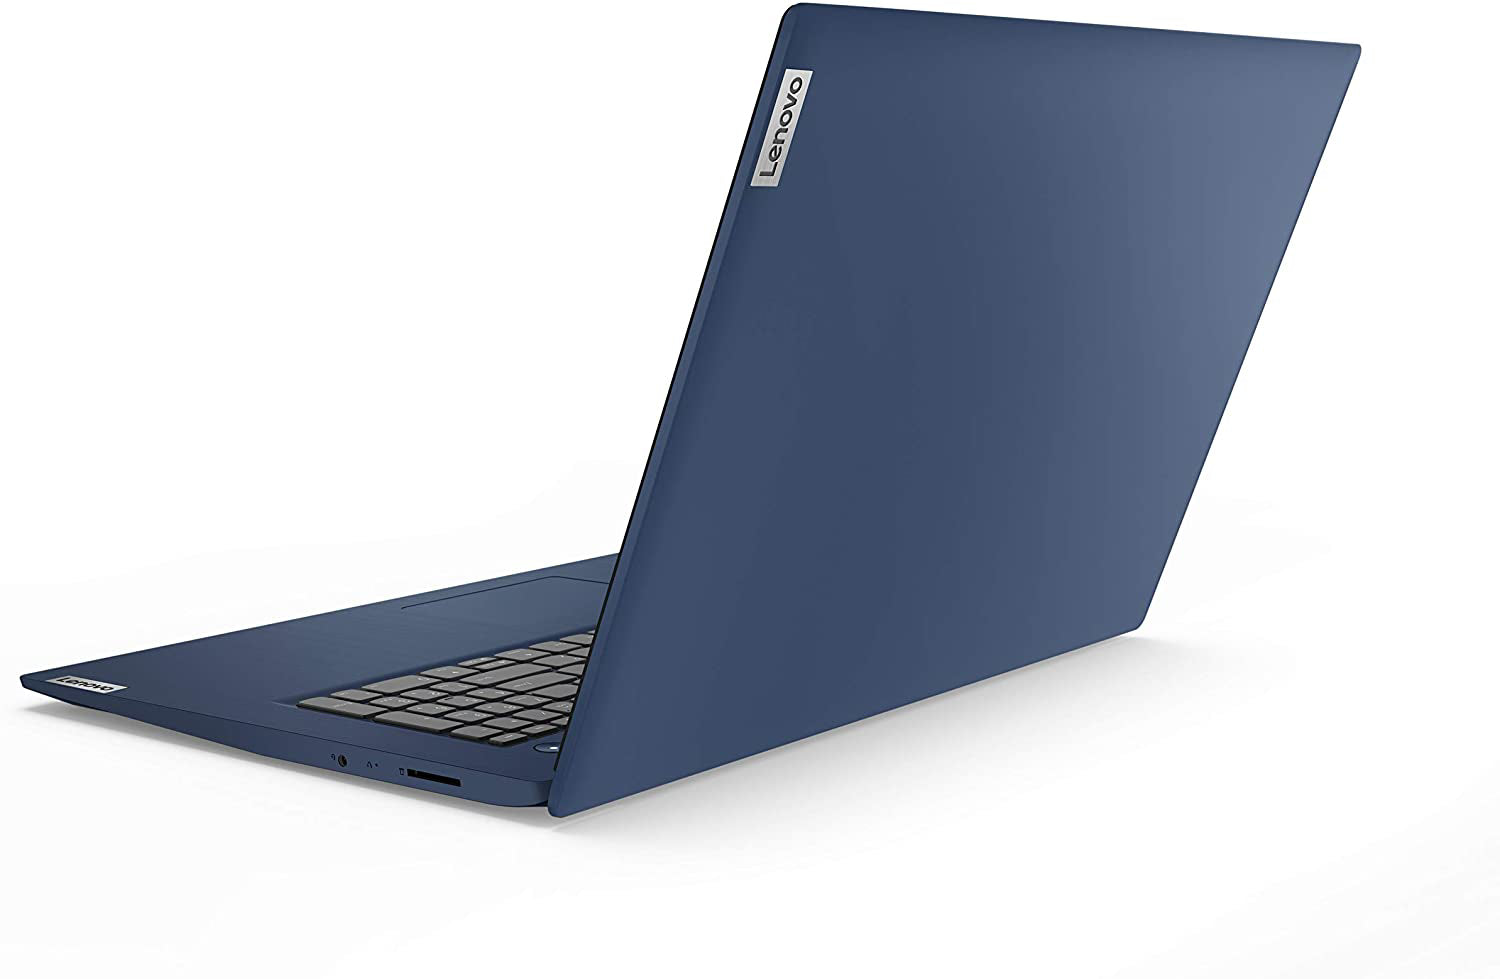 Lenovo IdeaPad 3 17.3" Laptop: 10th Generation Core i5-10210U, 256GB SSD, 8GB RAM, 17.3" Full HD IPS Display